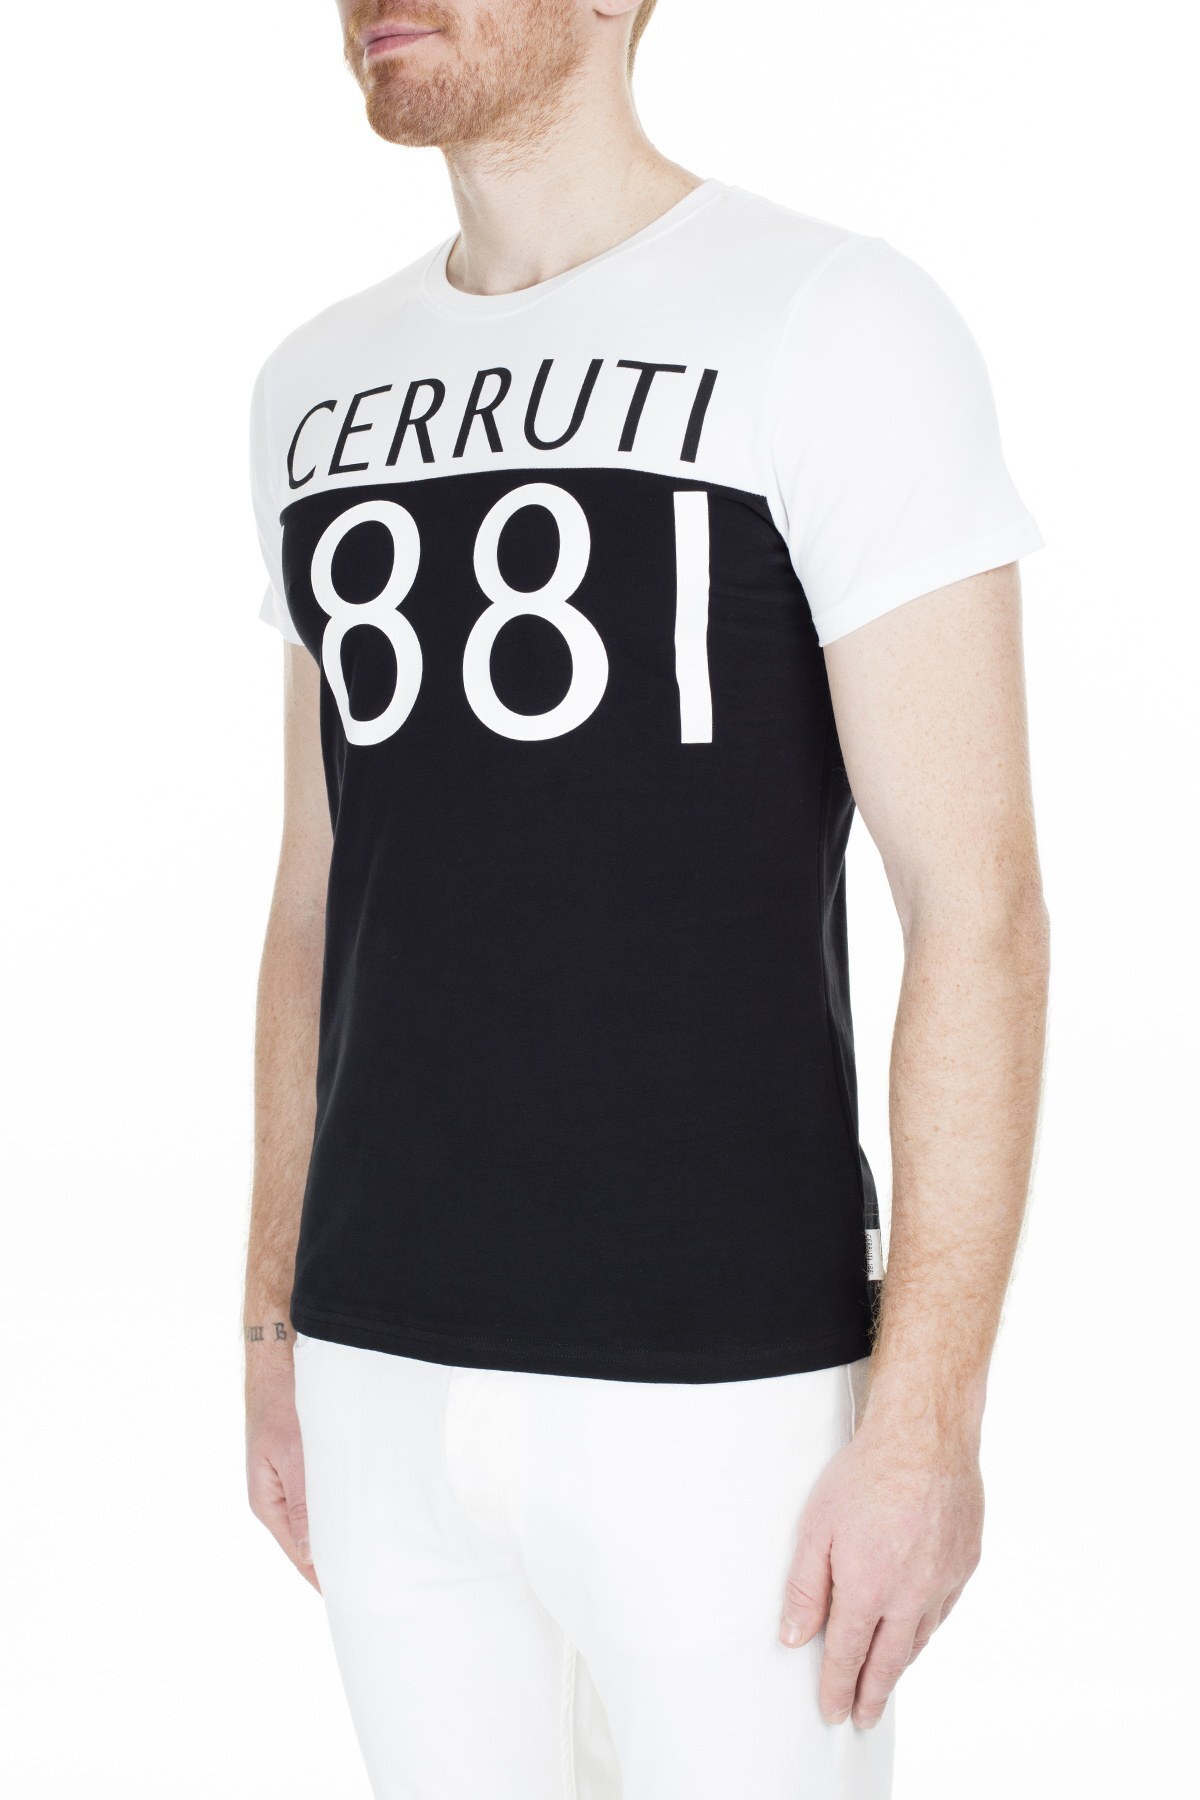 Cerruti 1881 Erkek T Shirt 203-001642 BEYAZ